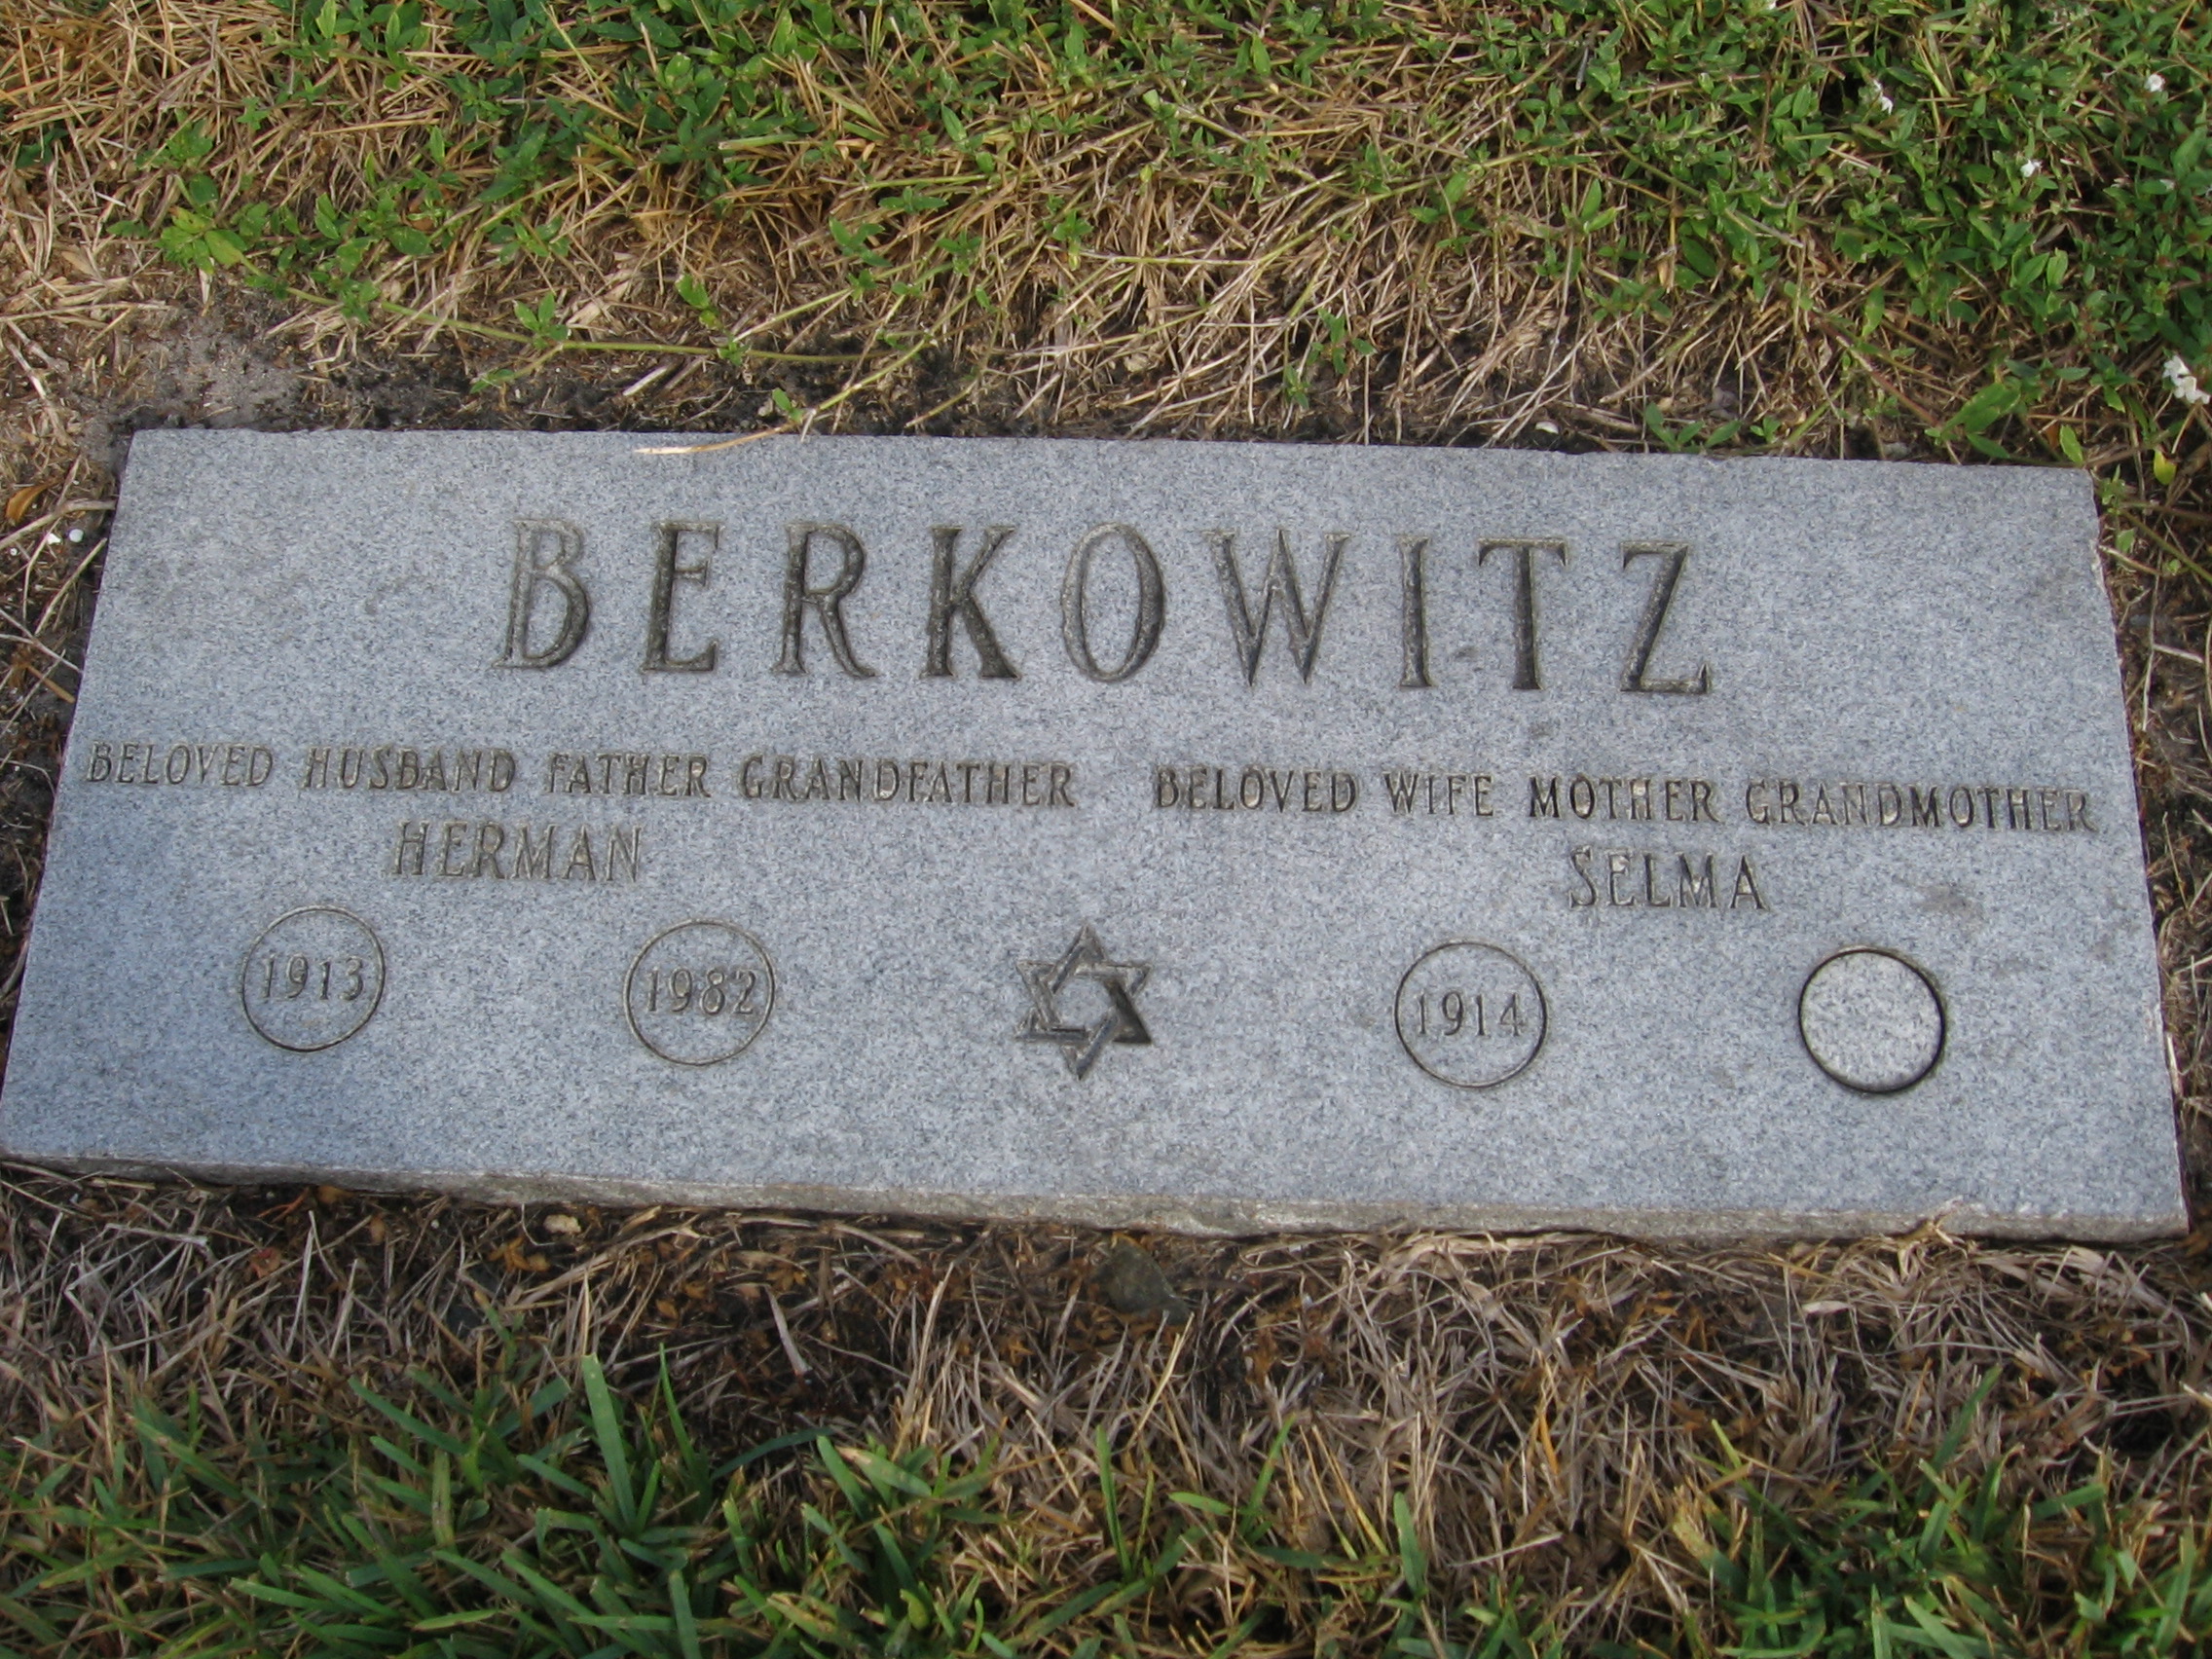 Herman Berkowitz